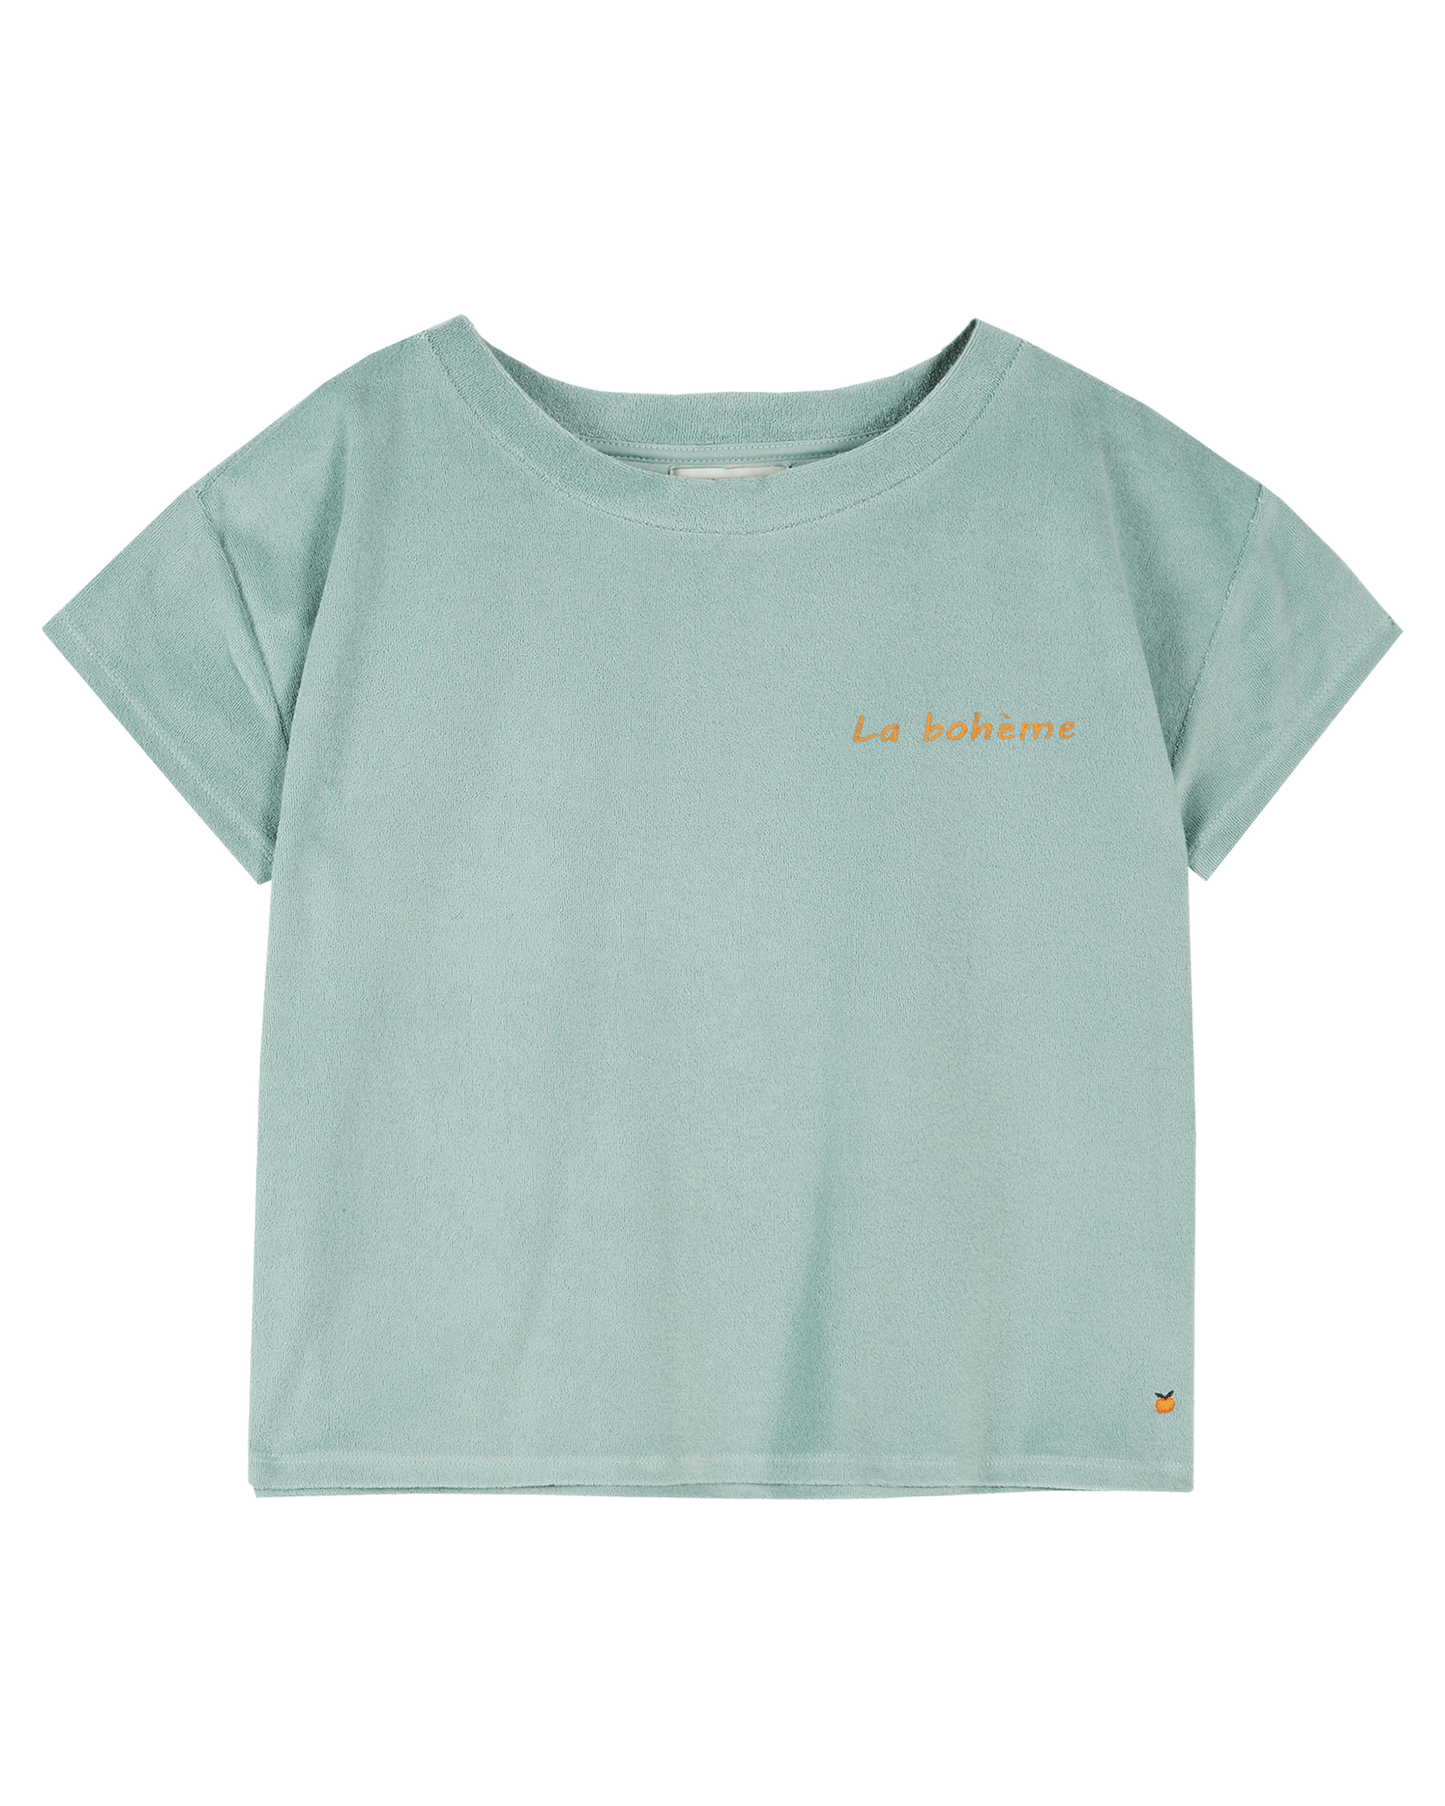 Tee-shirt femme éponge atlantique